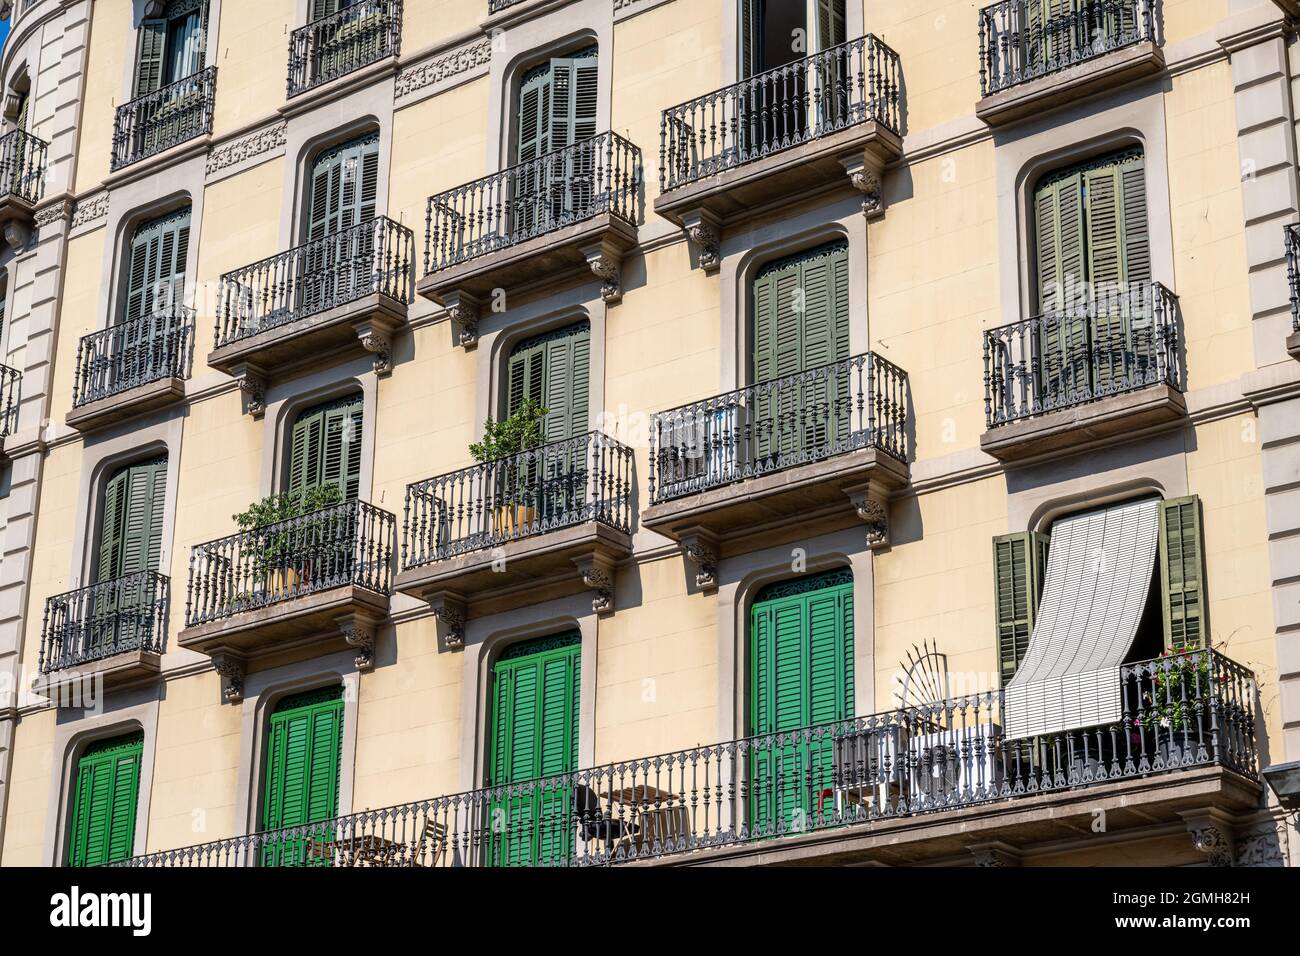 Façade typique d'un immeuble d'appartements à Barcelone, Espagne Banque D'Images